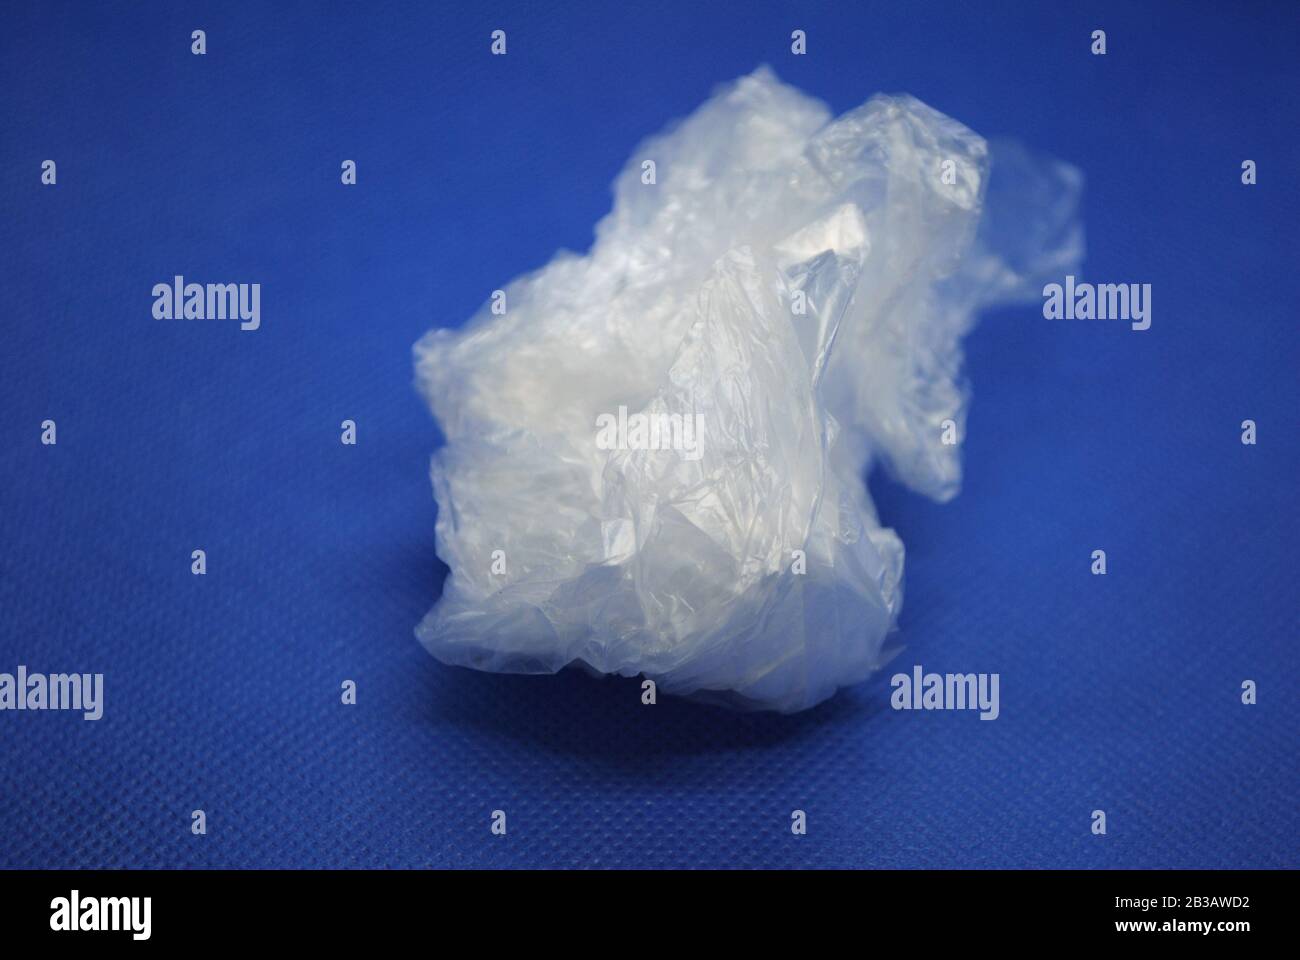 Sac en plastique transparent blanc écrasé en polyéthylène transparent sur fond bleu Banque D'Images